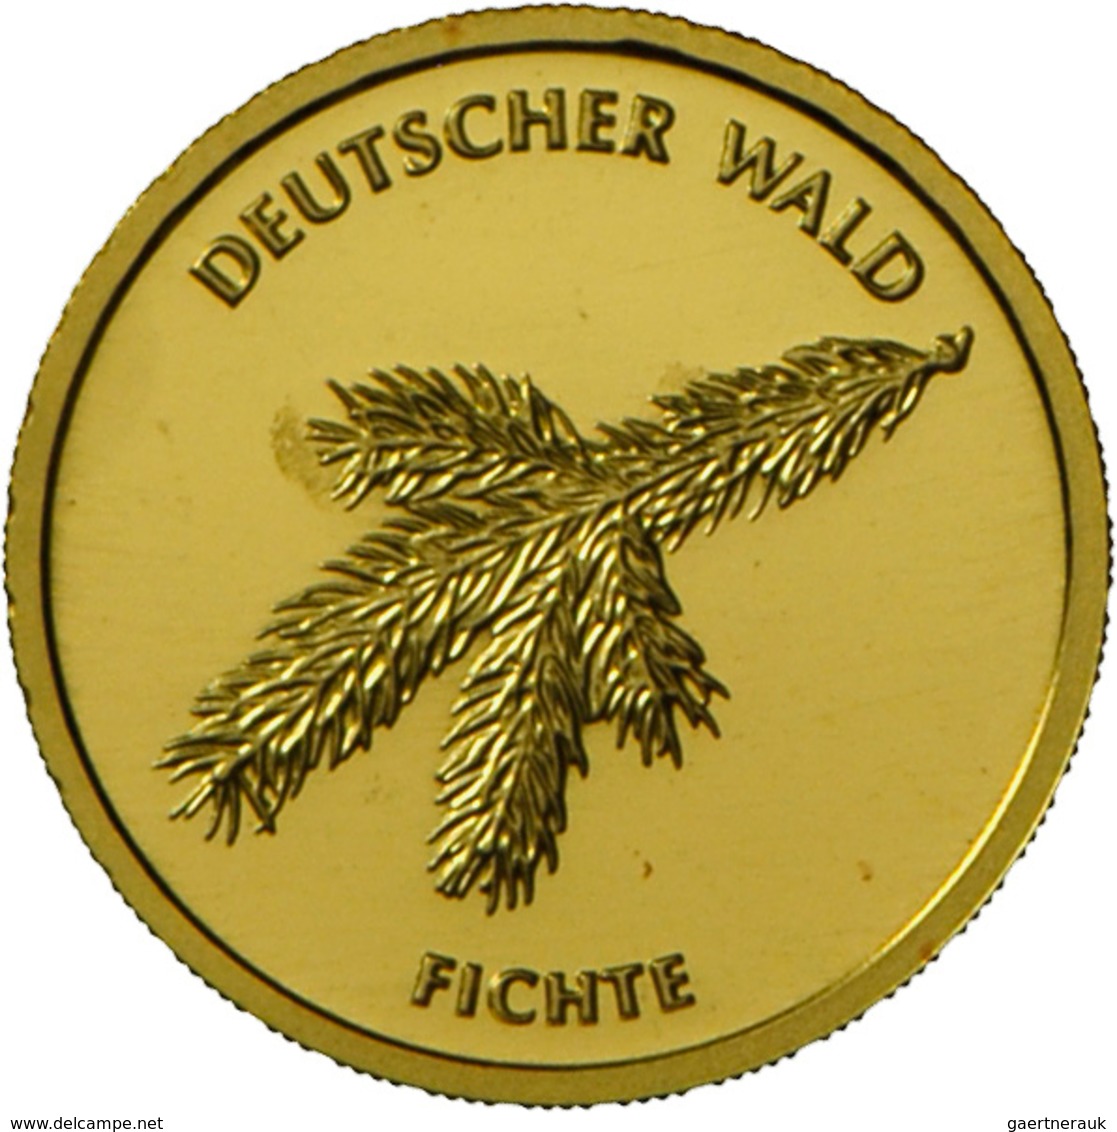 Deutschland - Anlagegold: 2 X 20 Euro 2012 Fichte (F,G), Jaeger 572. Jede Münze Wiegt 3,89 G 999/100 - Duitsland